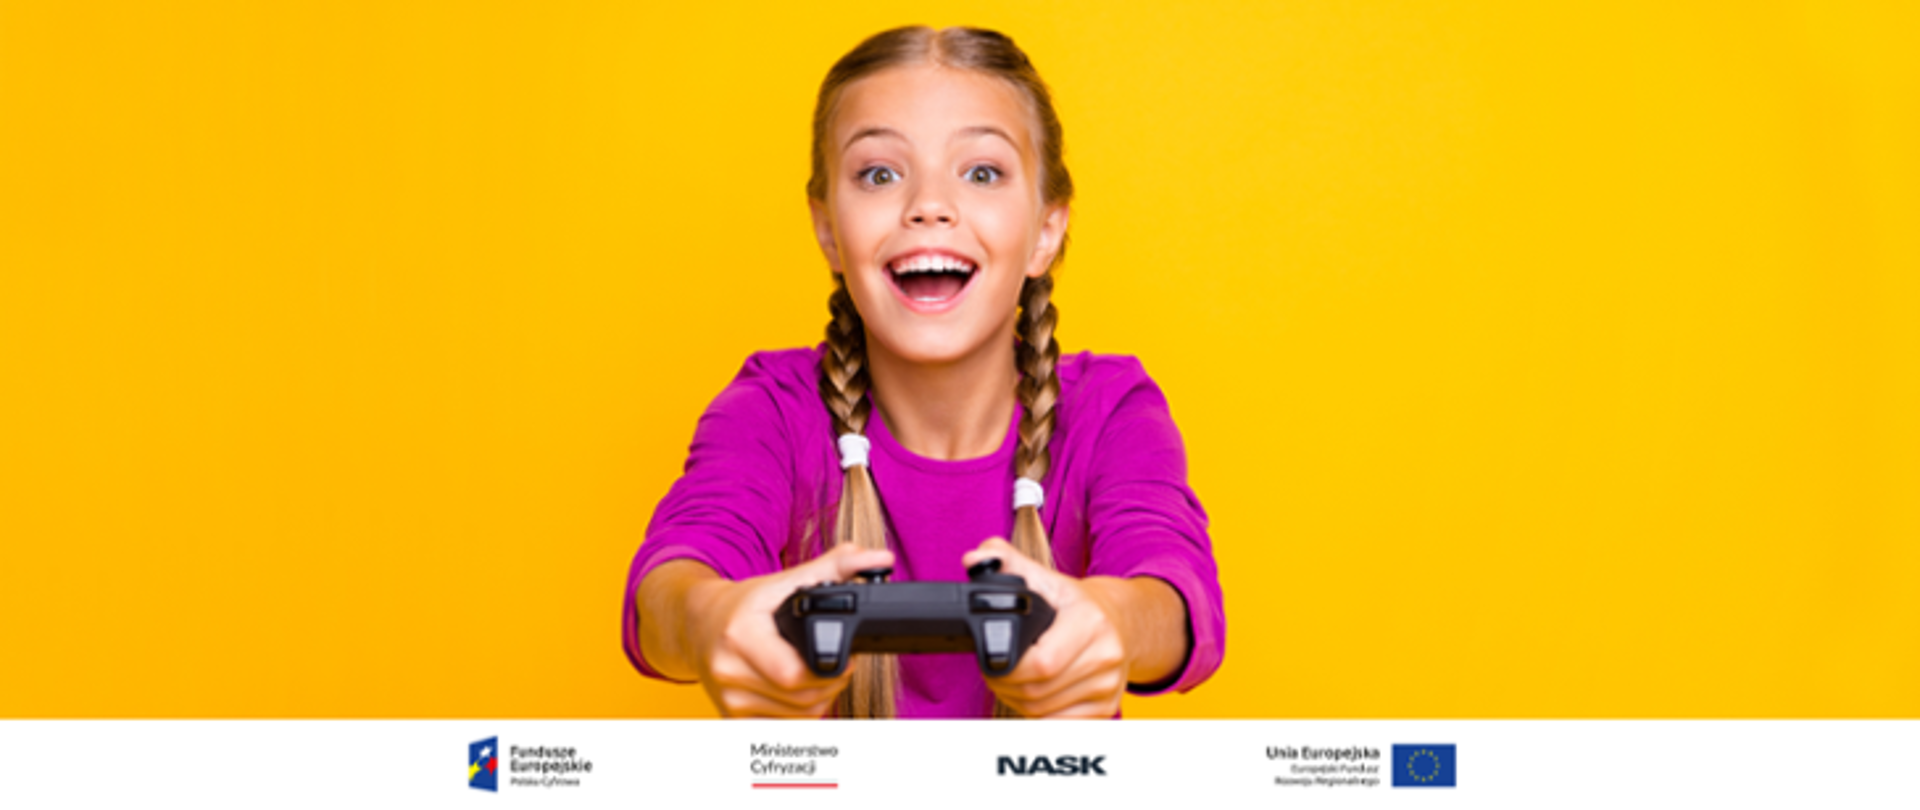 Zdjęcie uśmiechniętej dziewczynki z warkoczykami trzymającej w ręku konsolę do gry